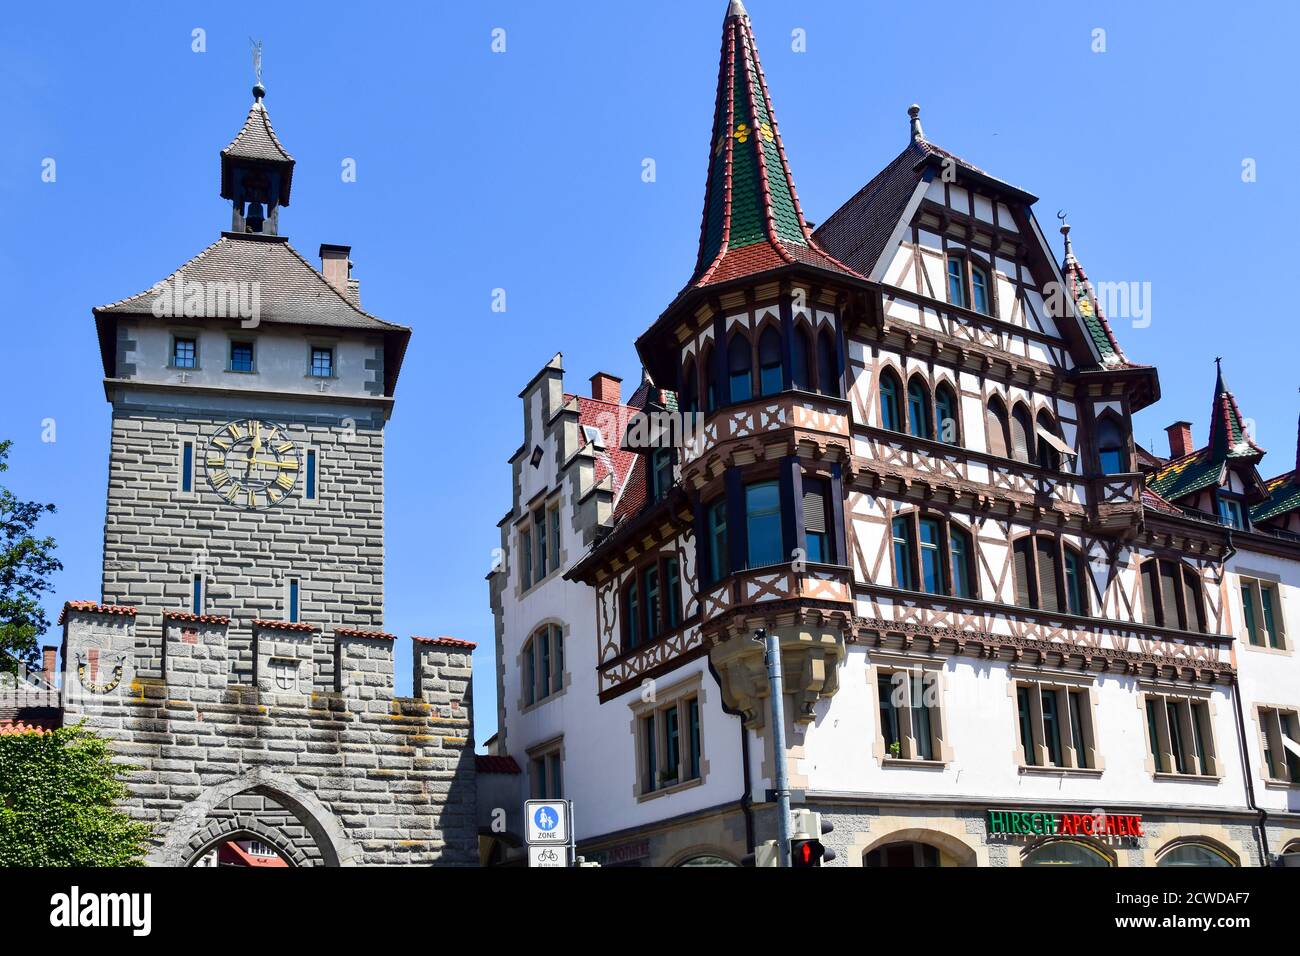 Konstanz, Alemania - 27 de mayo de 2020: Schnetztor, puerta fortificada de las antiguas murallas de la ciudad. Foto de stock